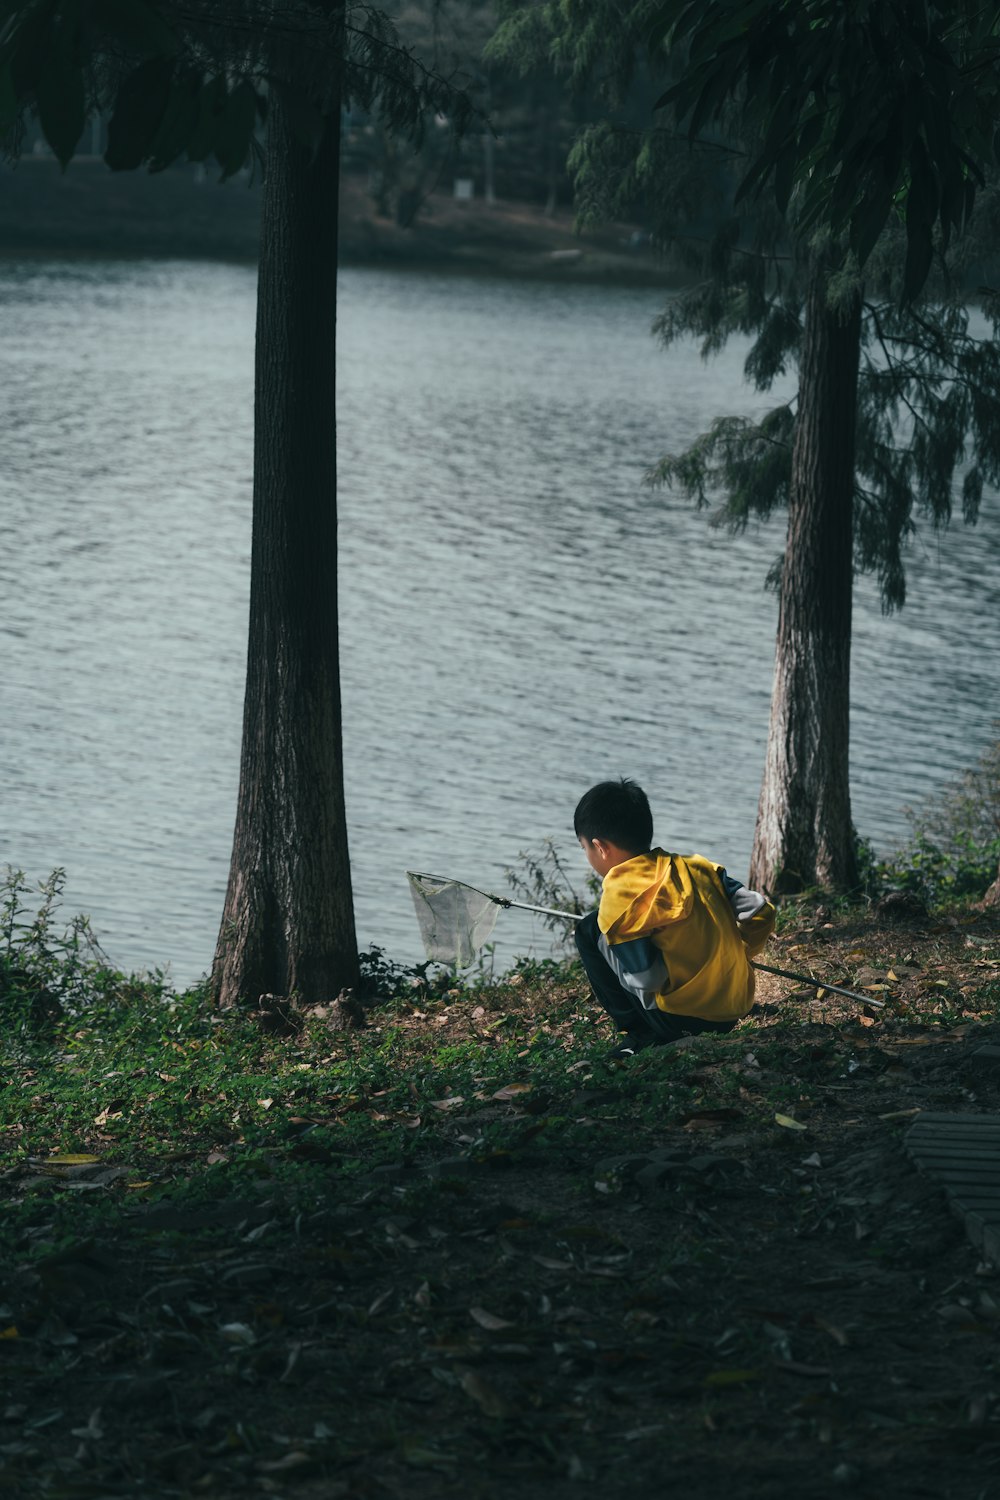 노란색과 검은색 재킷을 입은 남자가 수역 근처의 갈색 나무 줄기에 앉아 있다